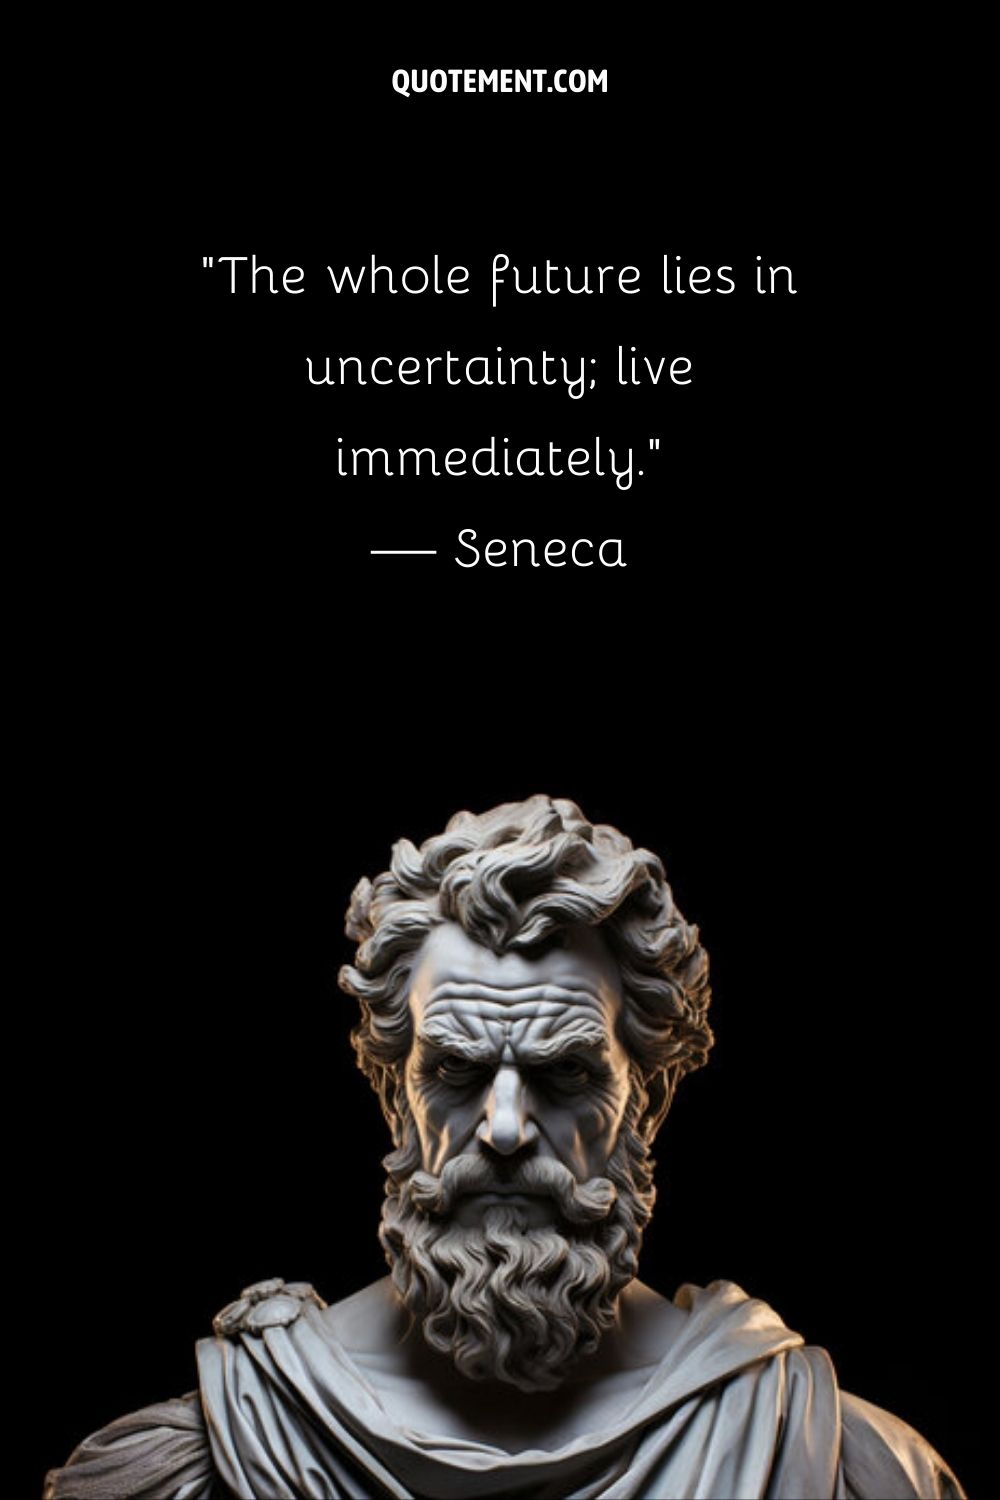 "Todo el futuro está en la incertidumbre; vive de inmediato". - Séneca